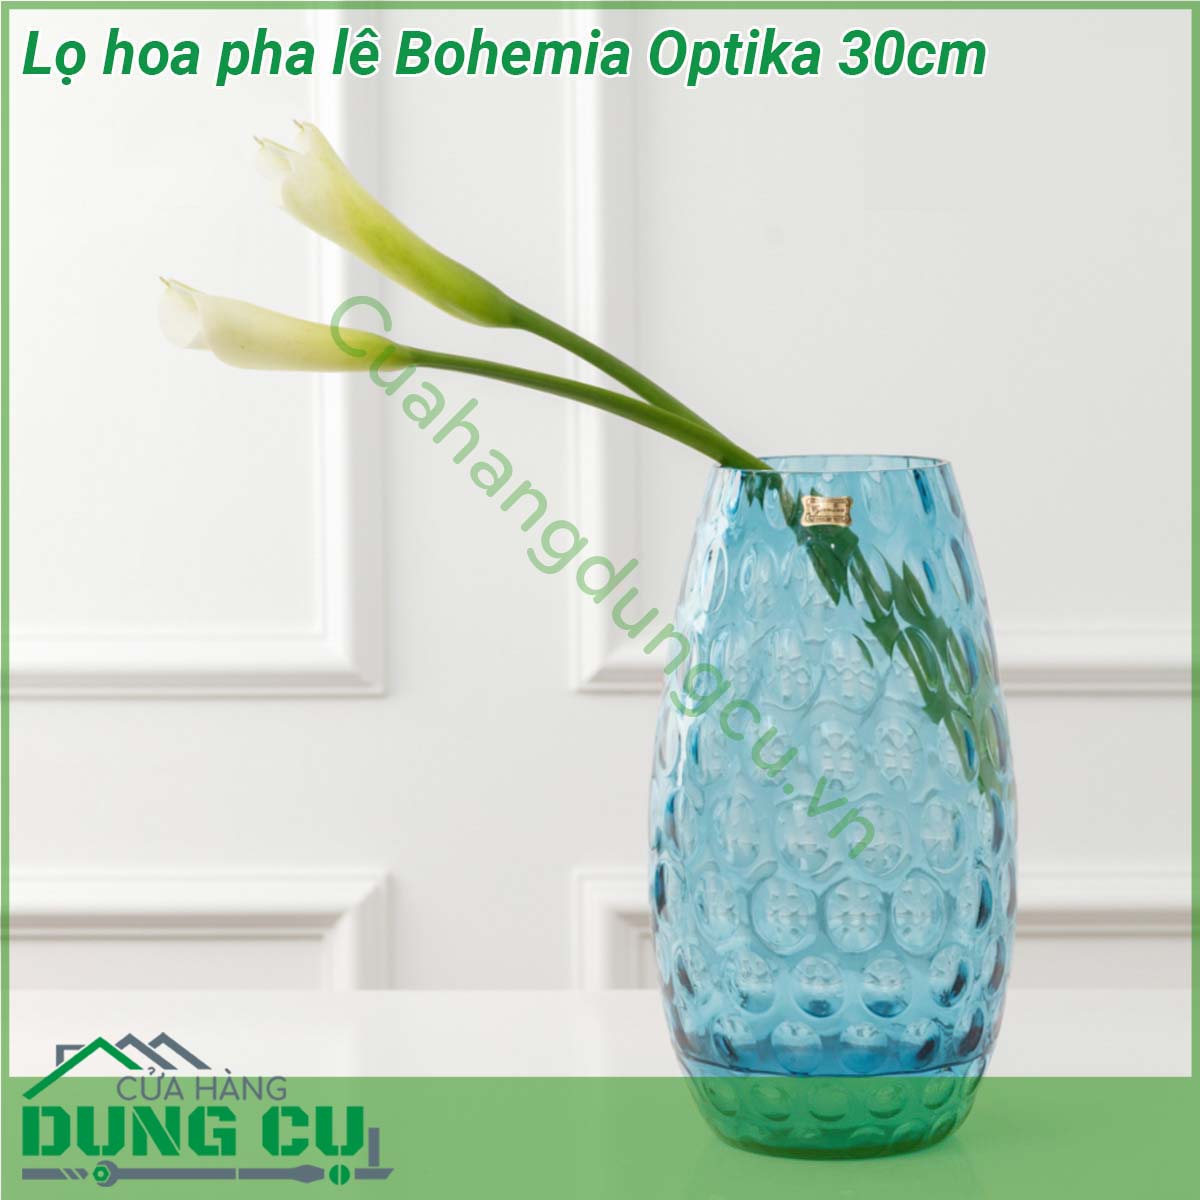 Lọ hoa pha lê Bohemia Optika 30cm với chất liệu pha lê cao cấp lọ hoa pha lê Optika giúp cho những khoảng không gian trống đơn điệu trở nên nổi bật sang trọng và đầy thu hút  Pha lê Bohemia có chất lượng và độ bóng tuyệt hảo cường lực chống trầy và an toàn khi sử dụng máy rửa chén  